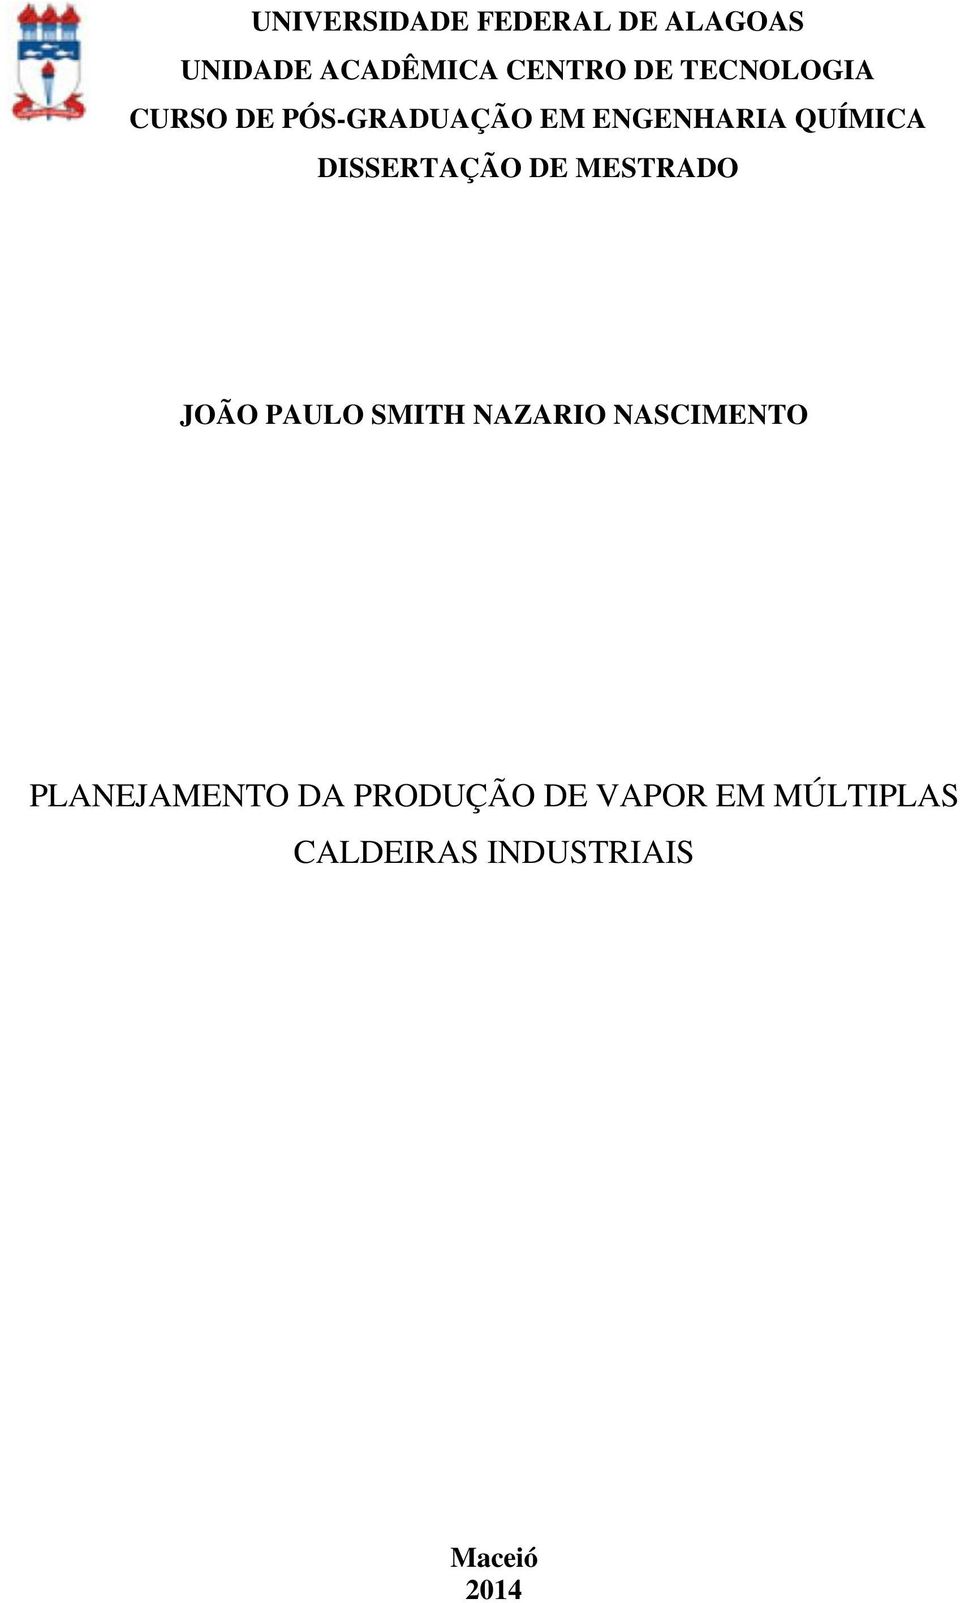 DISSERTAÇÃO DE MESTRADO JOÃO PAULO SMITH NAZARIO NASCIMENTO